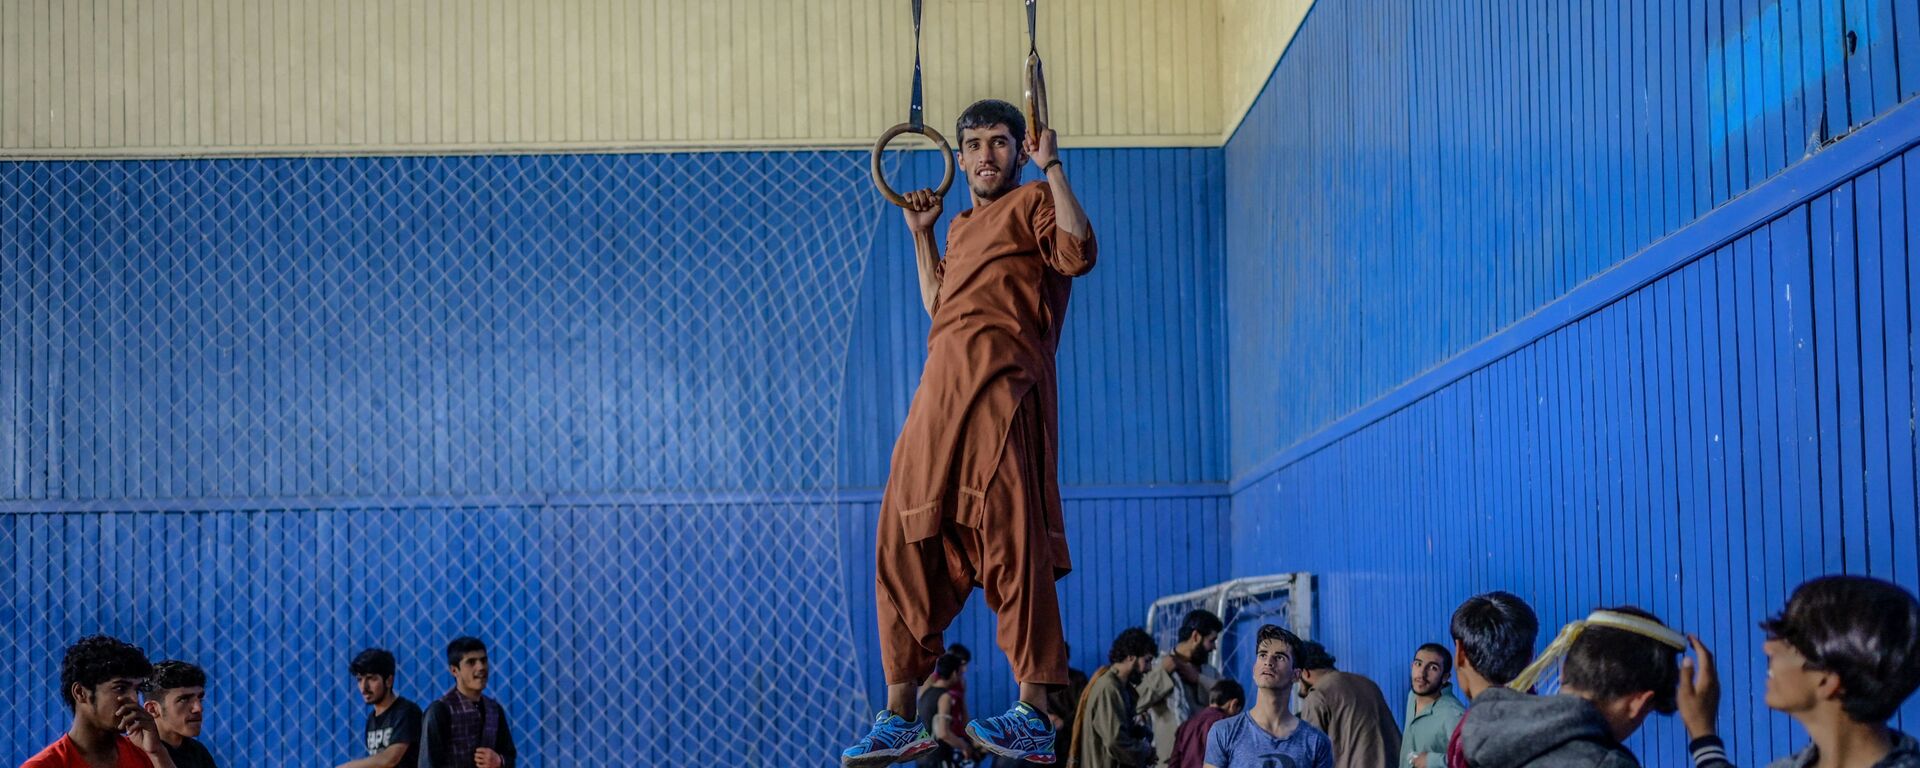 Молодежь в спортзале в Кабуле  - Sputnik Узбекистан, 1920, 15.09.2021